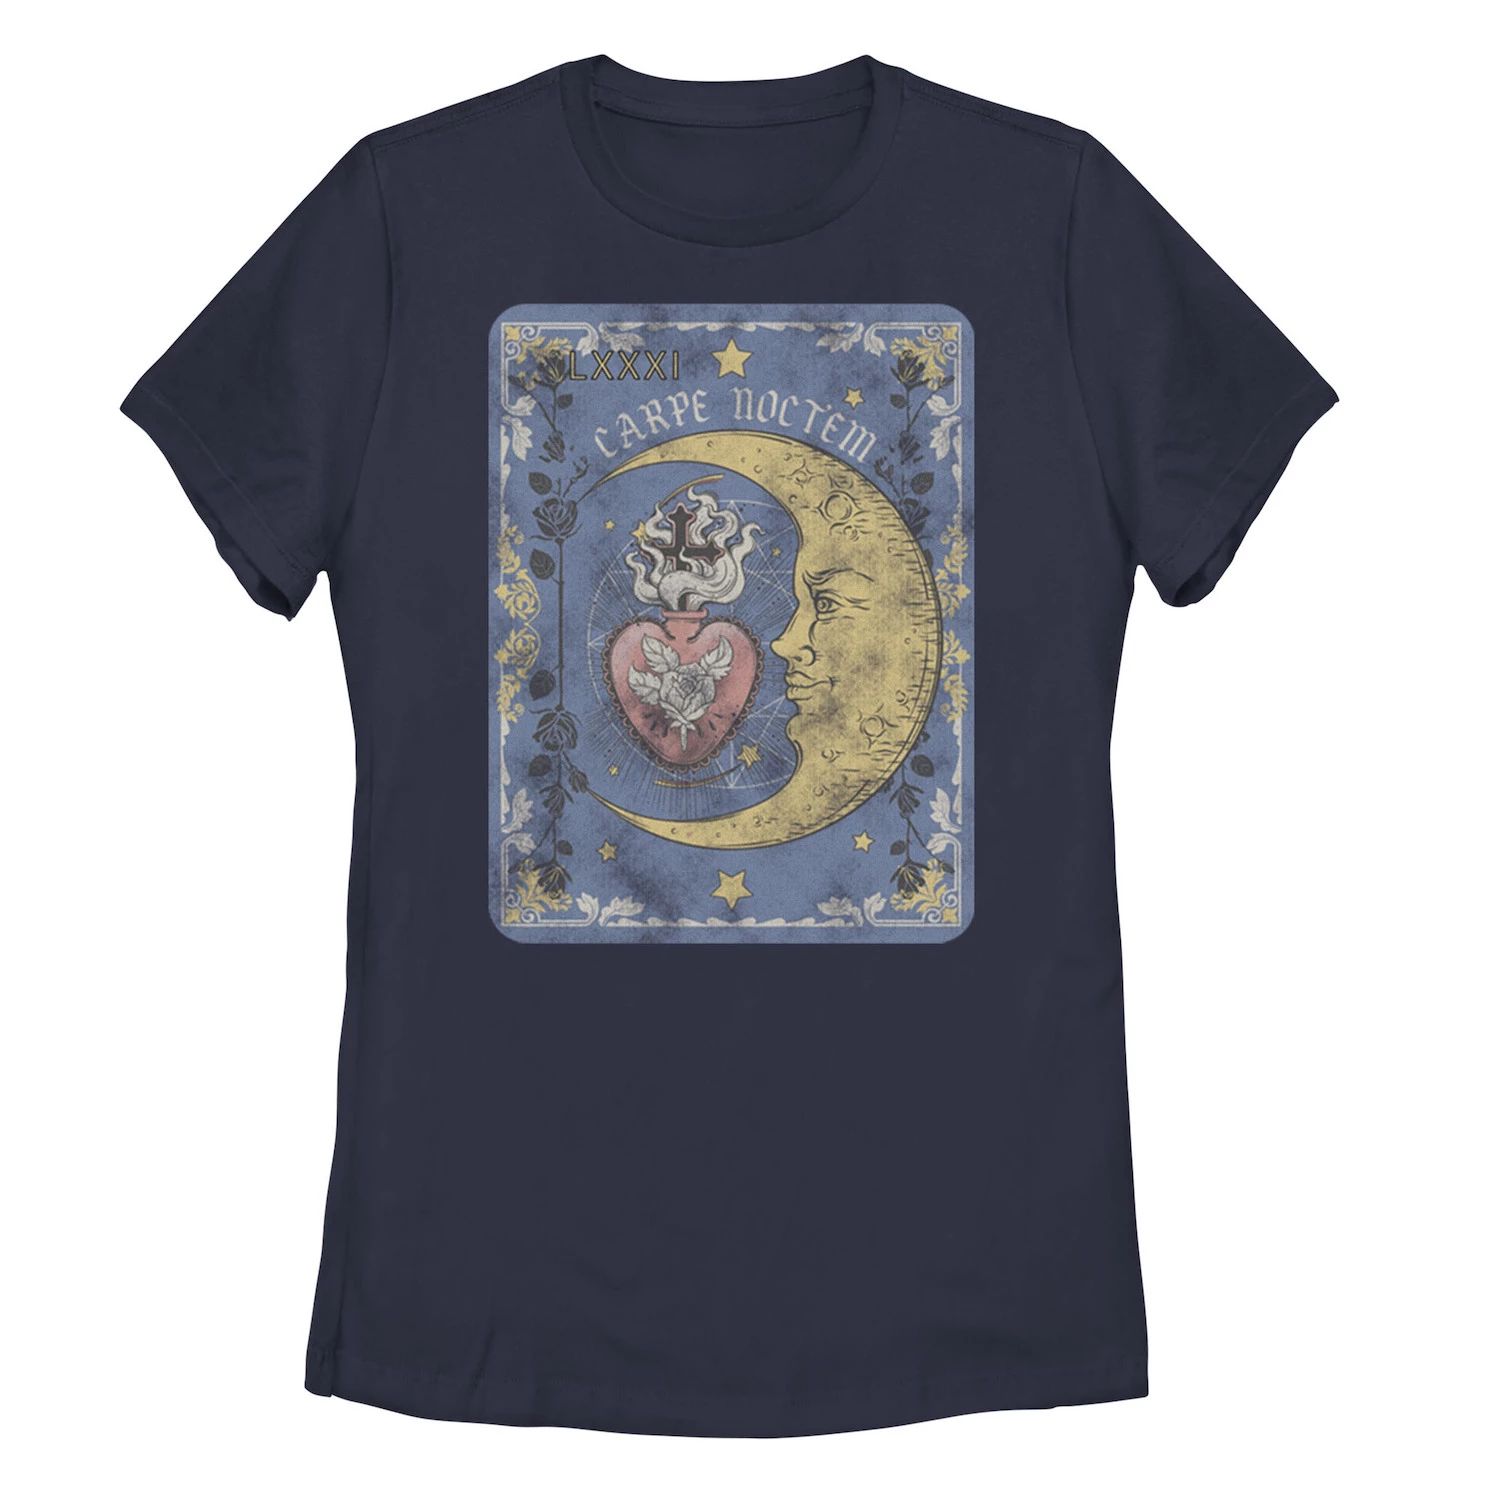 Детская футболка с изображением карты Таро и галактическим рисунком